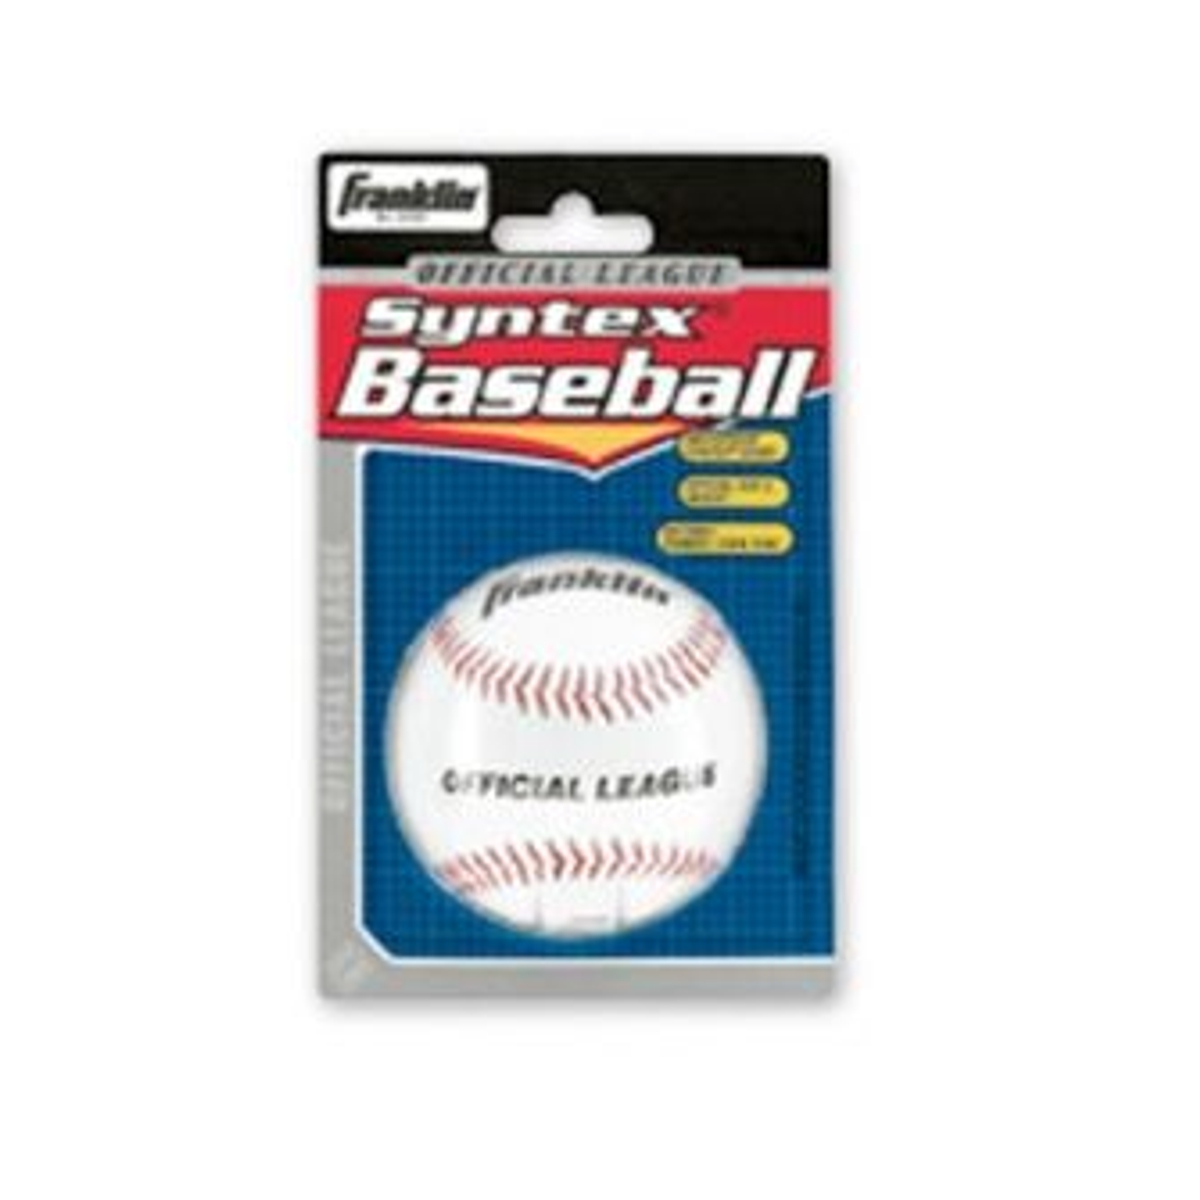 Franklin 1532 rubber baseball